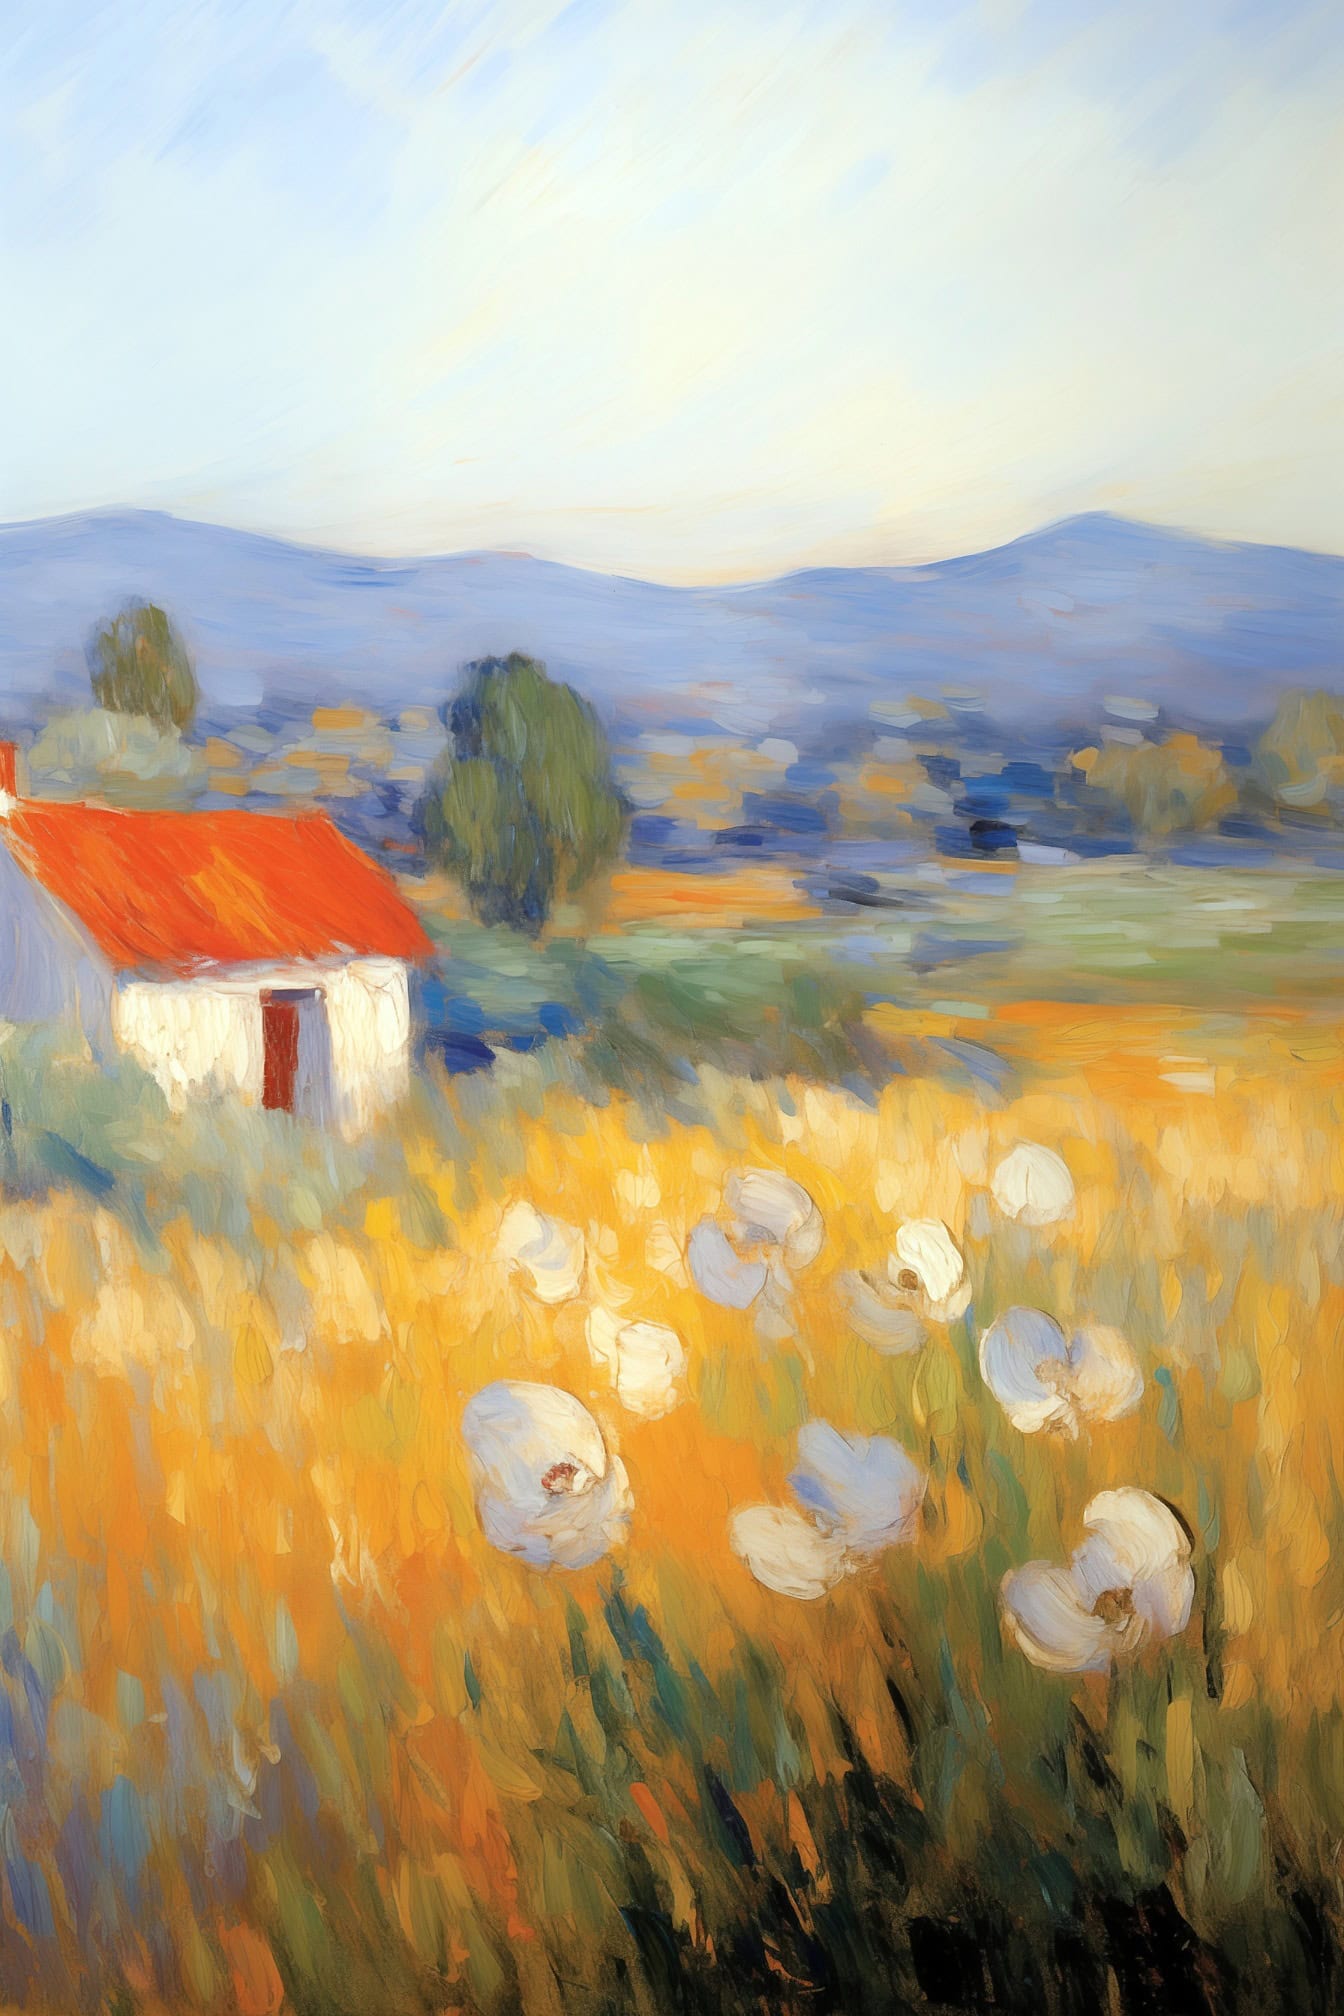 Pittura acrilica impressionista di una casa colonica di campagna in un campo di fiori